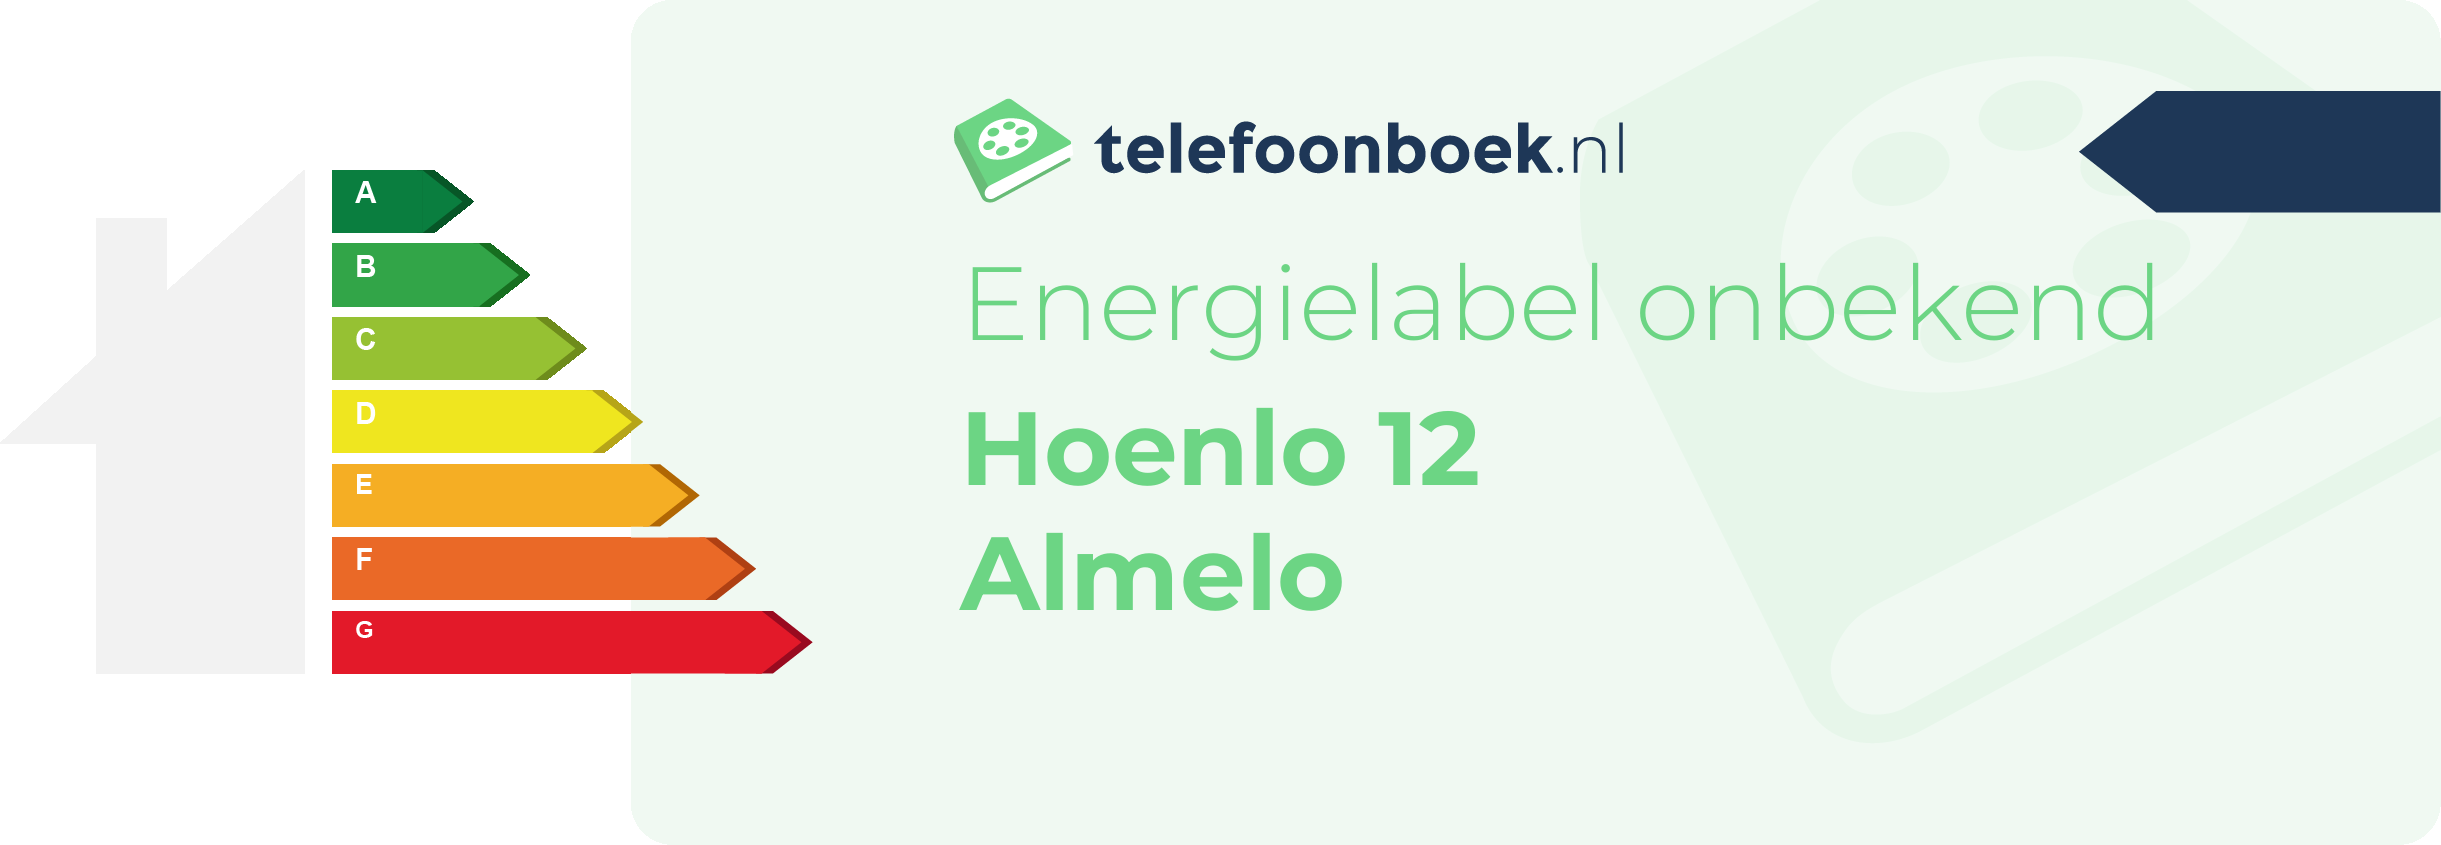 Energielabel Hoenlo 12 Almelo